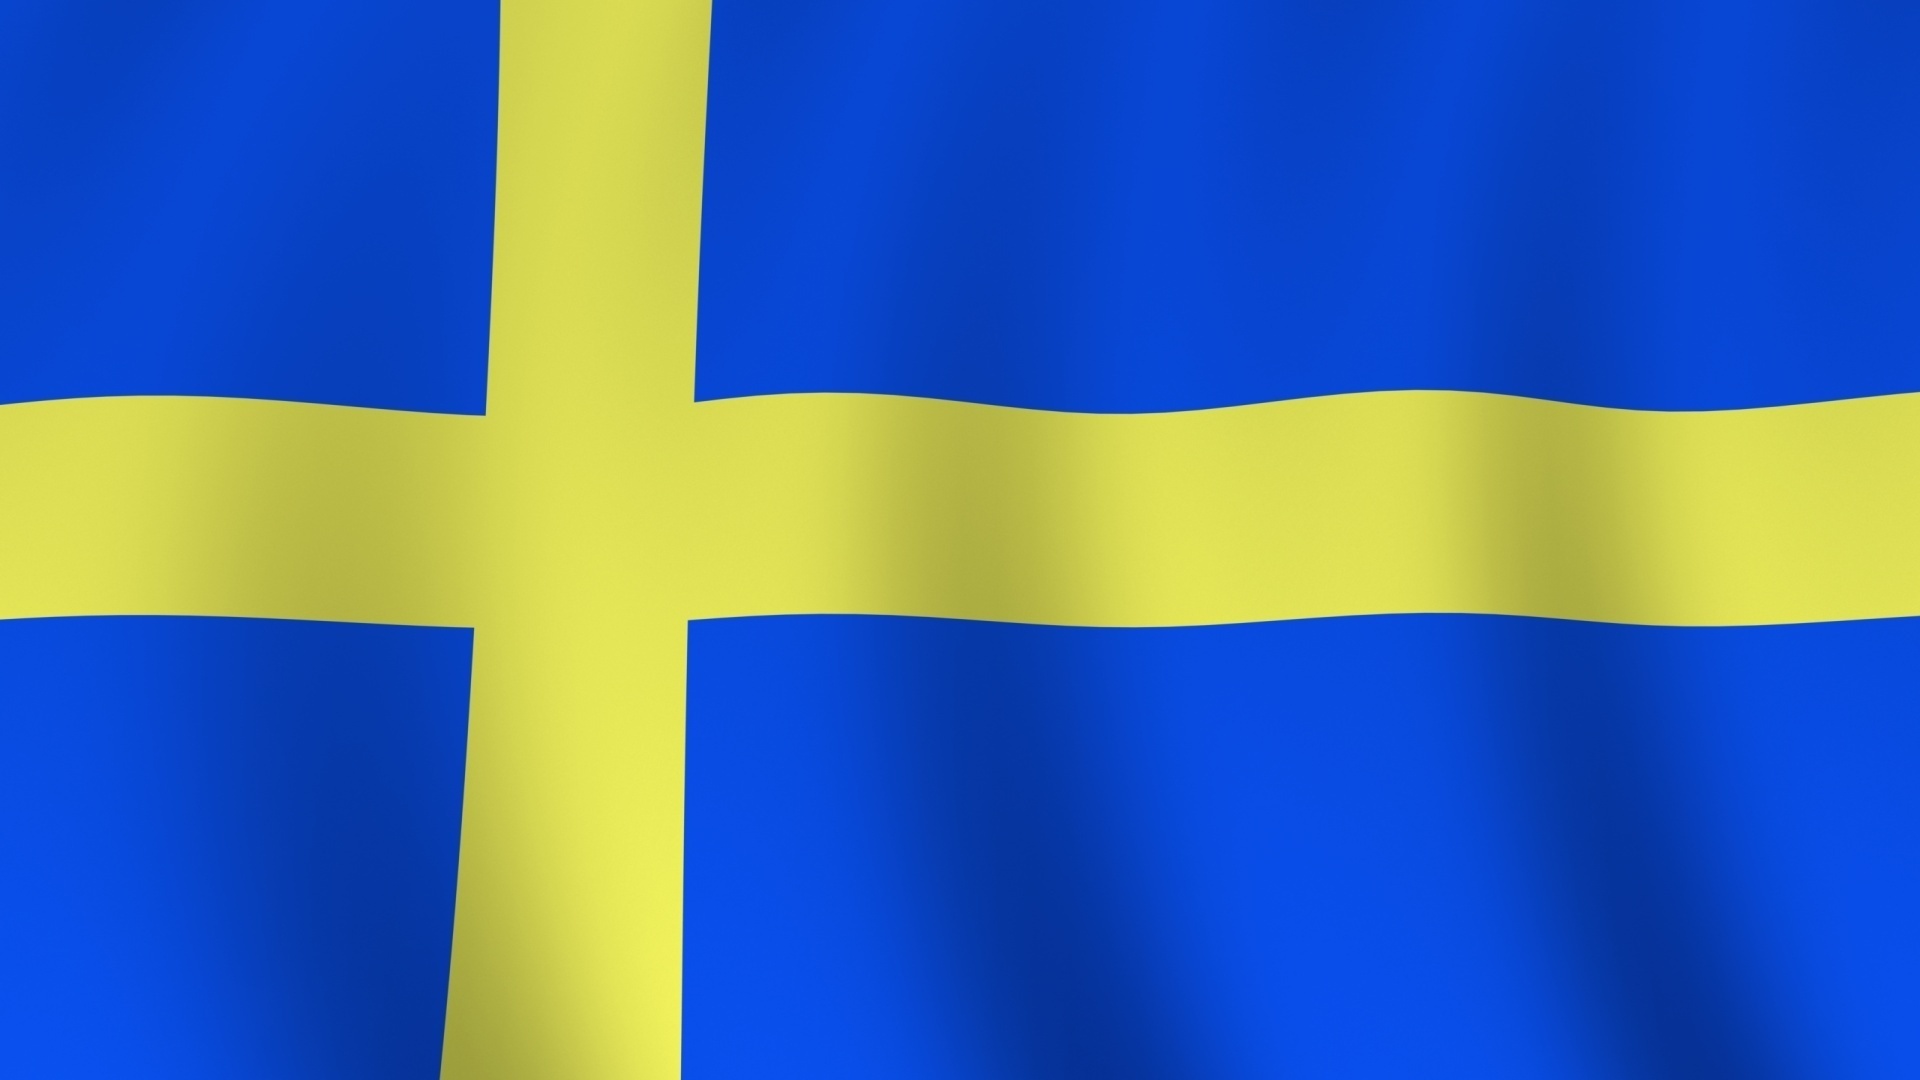 schwedische flagge tapete,kobaltblau,flagge,blau,elektrisches blau,gelb